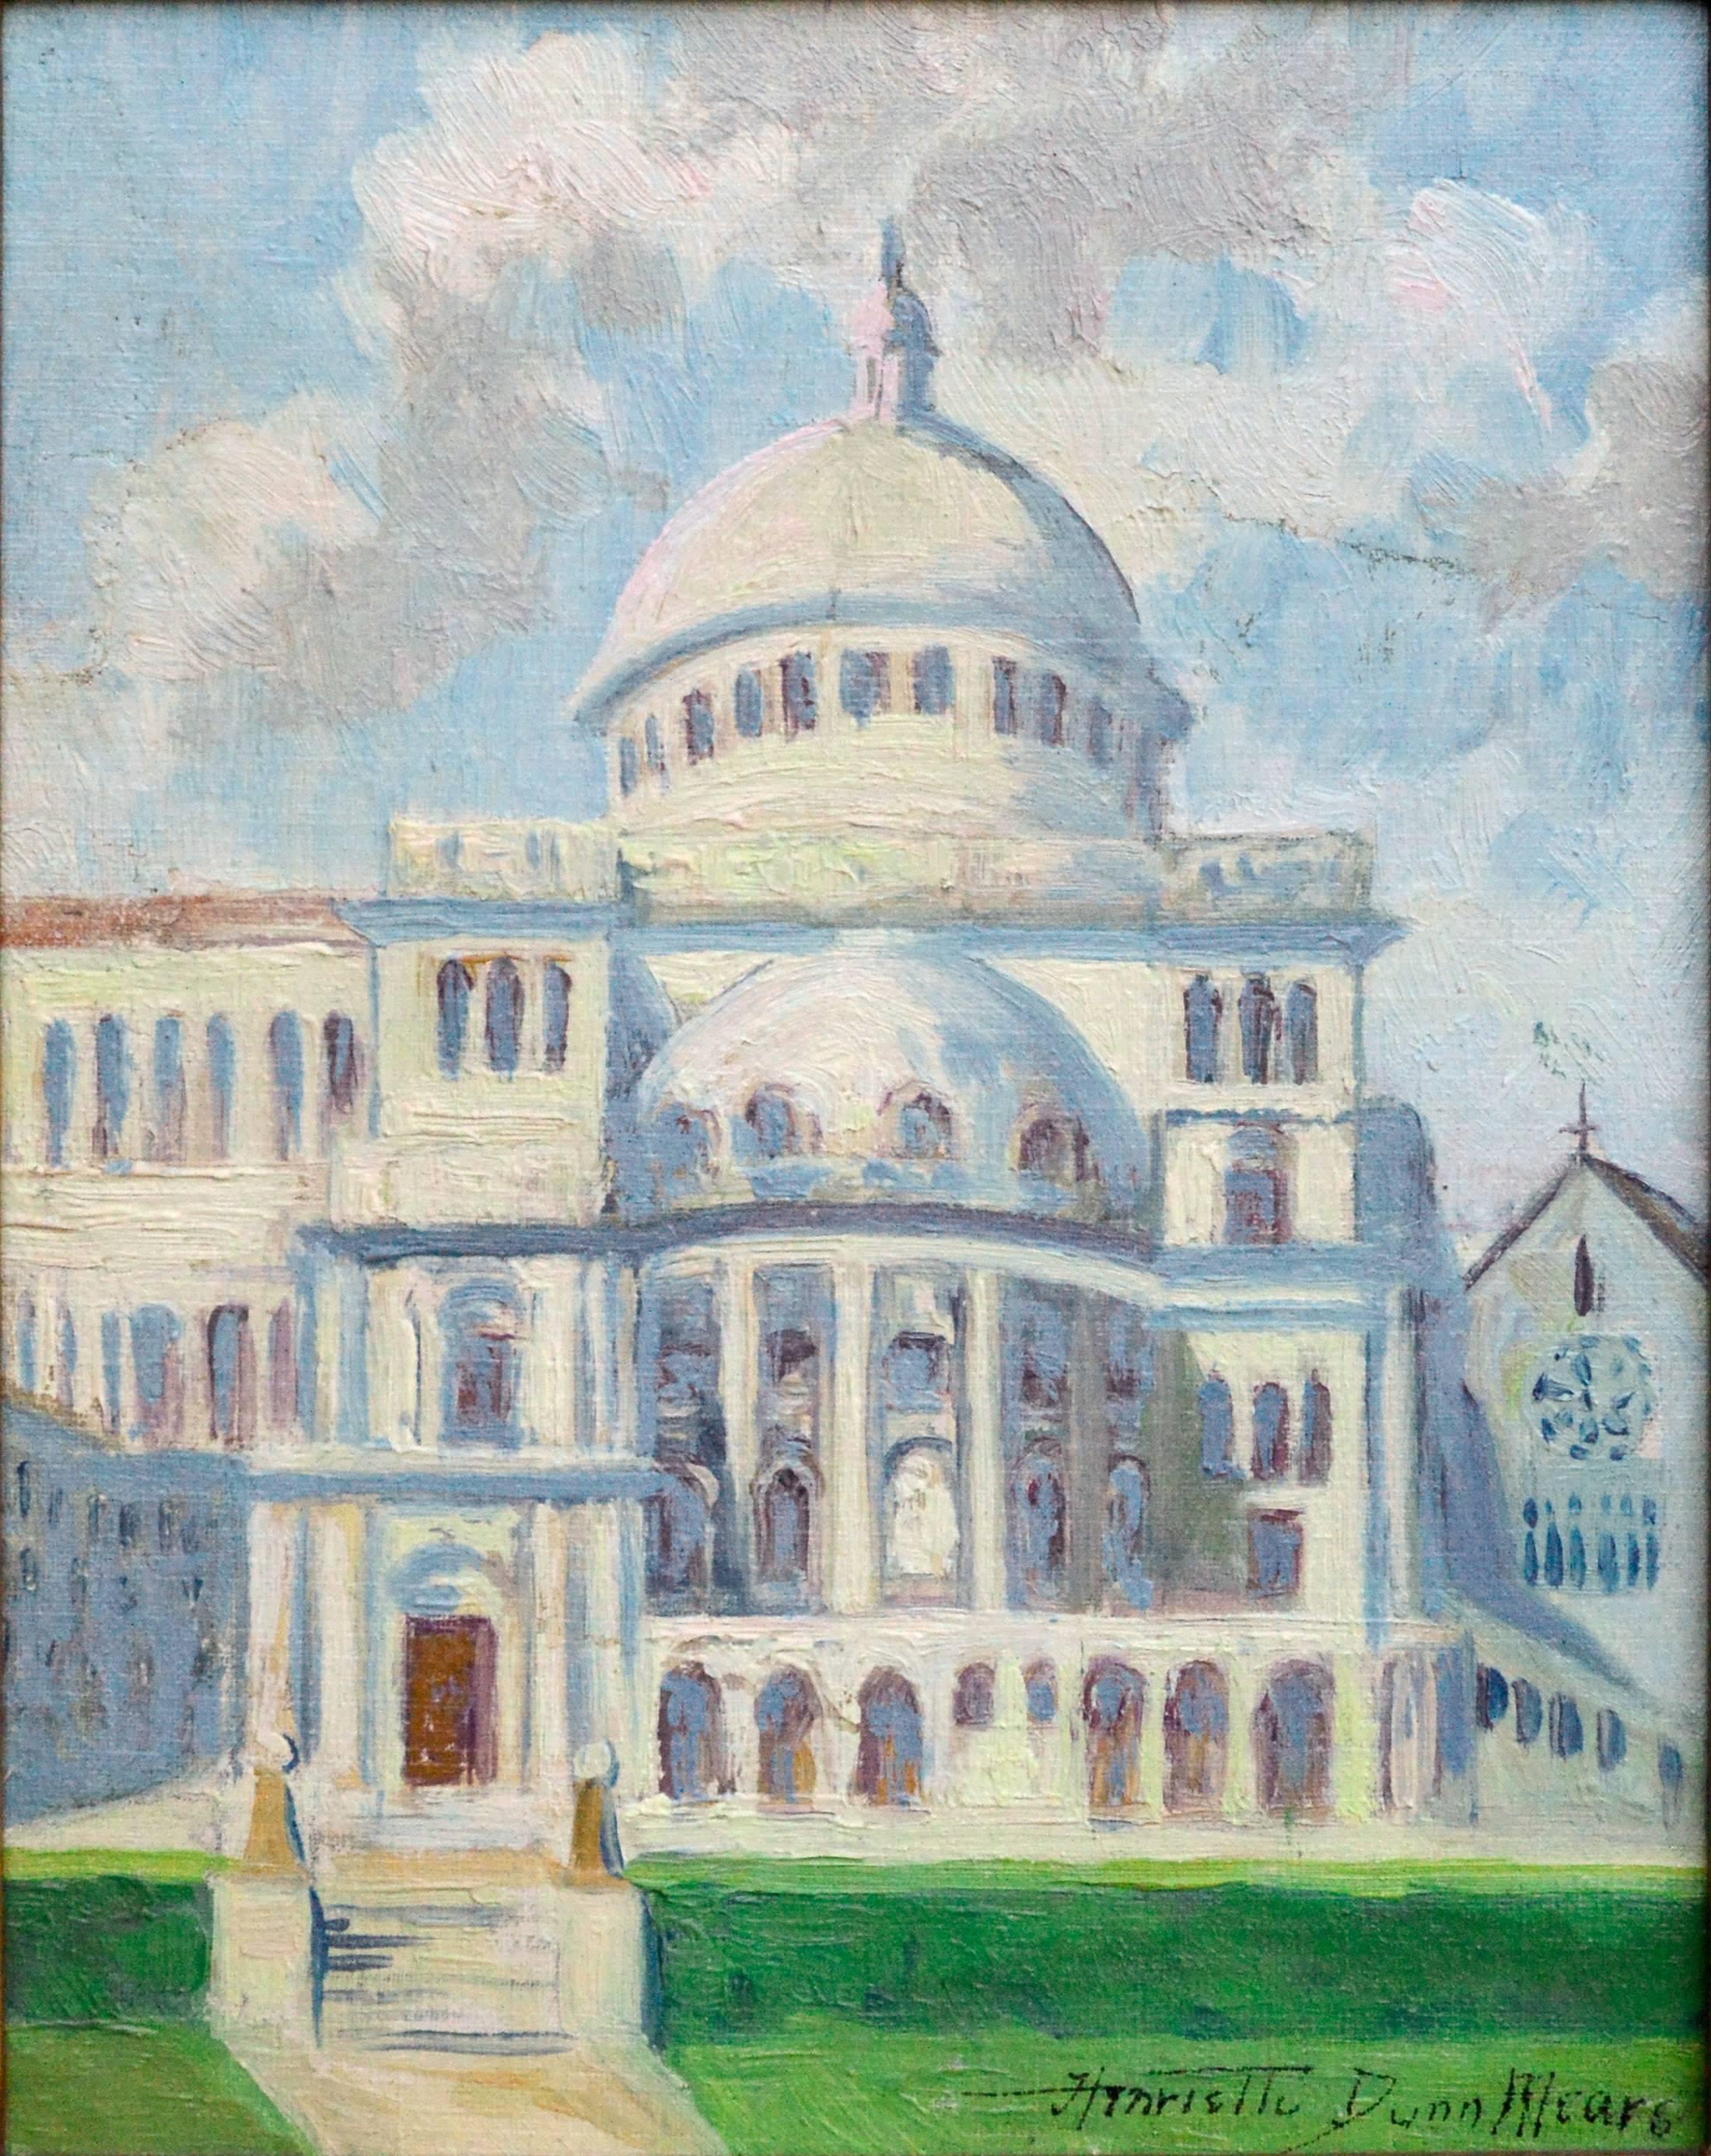 The First Church of Christ Scientist - Bostoner Landschaft des frühen 20. Jahrhunderts  – Painting von Henrietta Dunn Mears